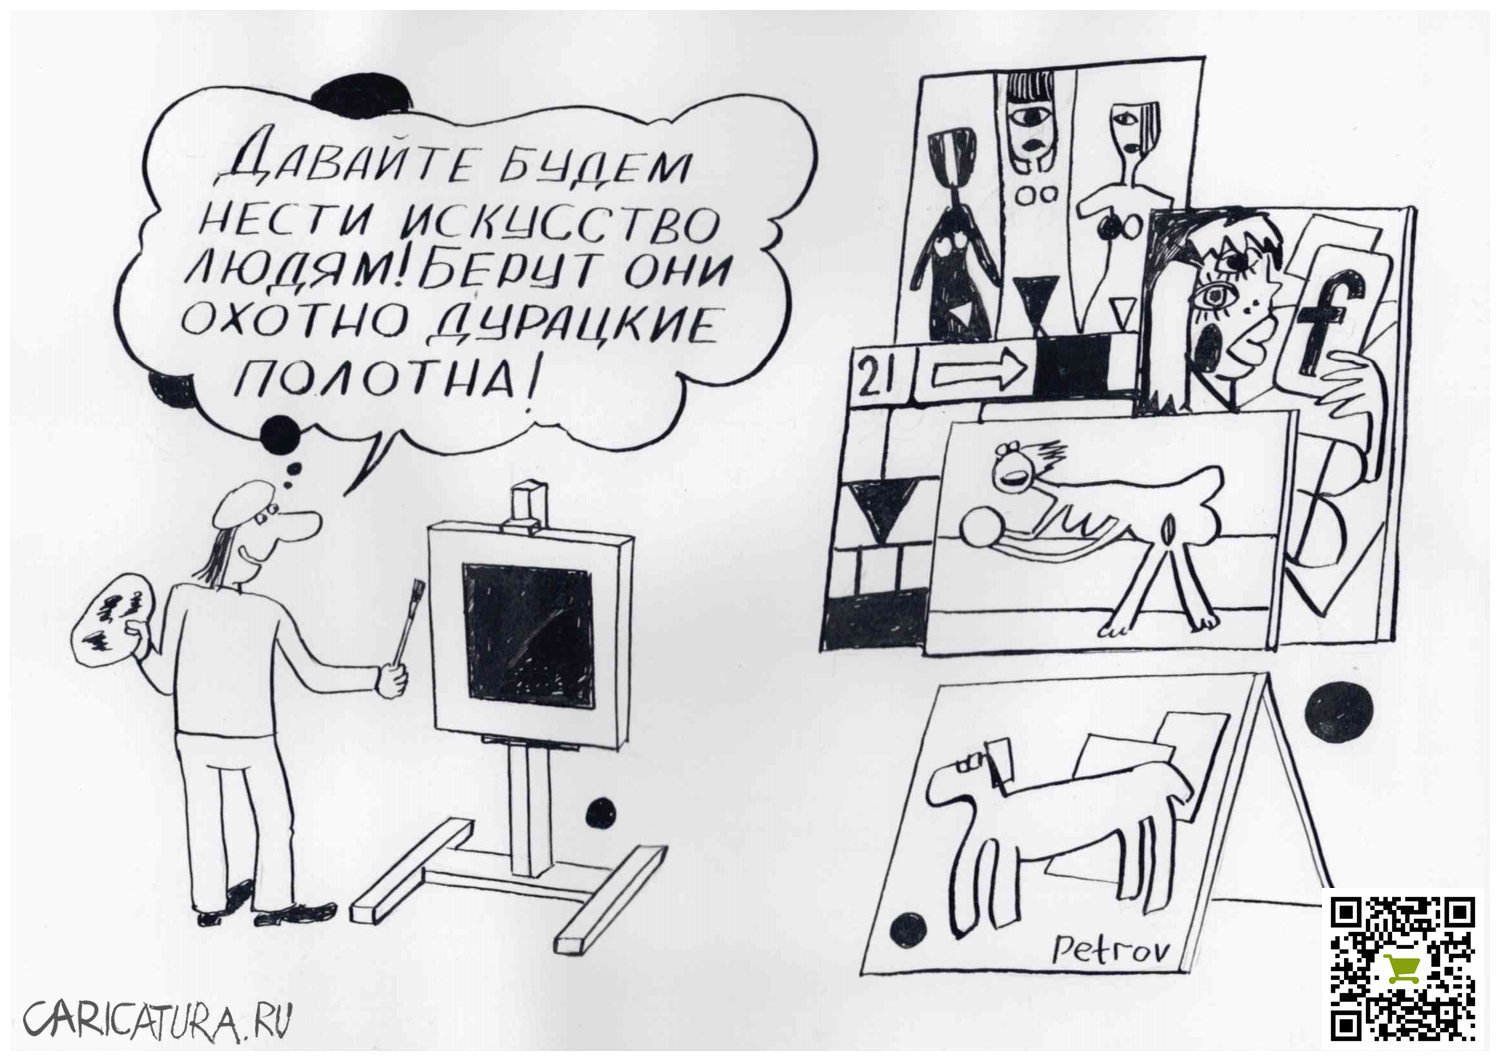 Карикатура "Искусство в массы", Александр Петров